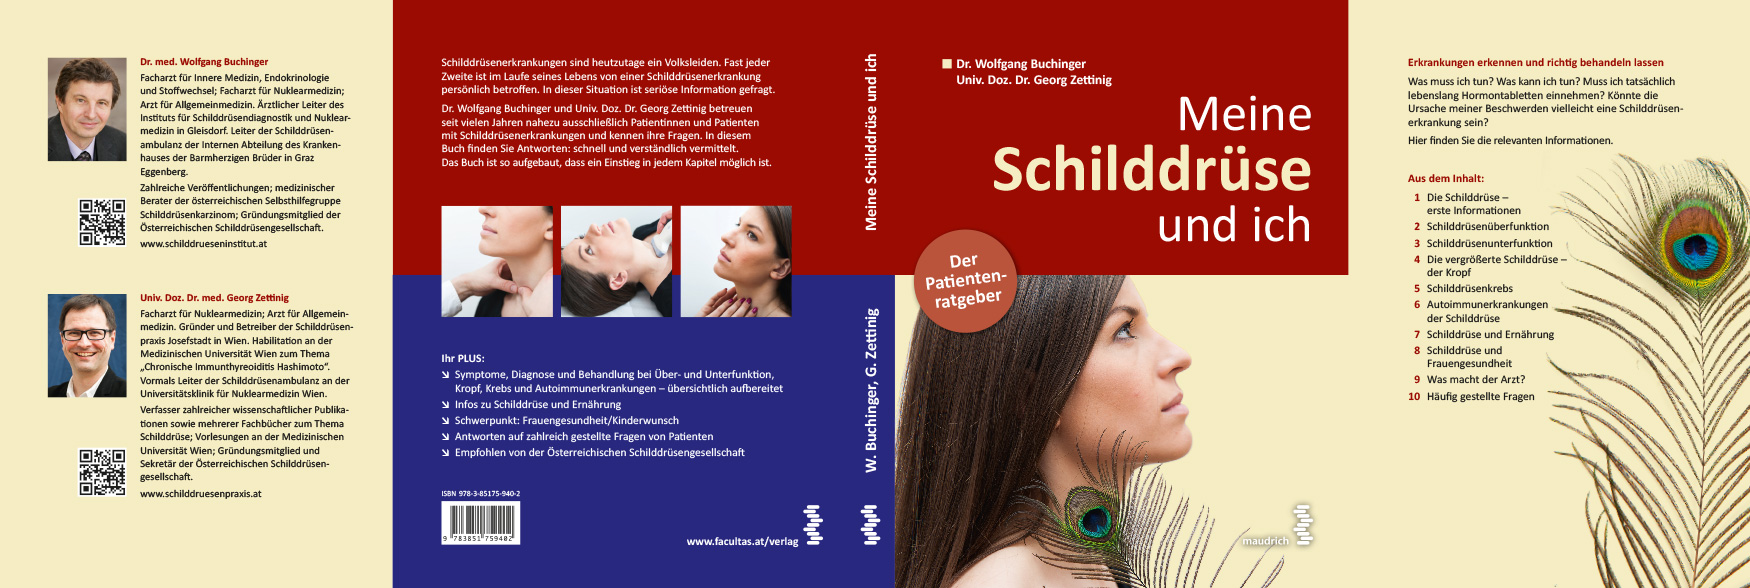 Der äußere und innere Umschlag des Patientenratgebers Meine Schilddrüse und ich - 1. Auflage 2014